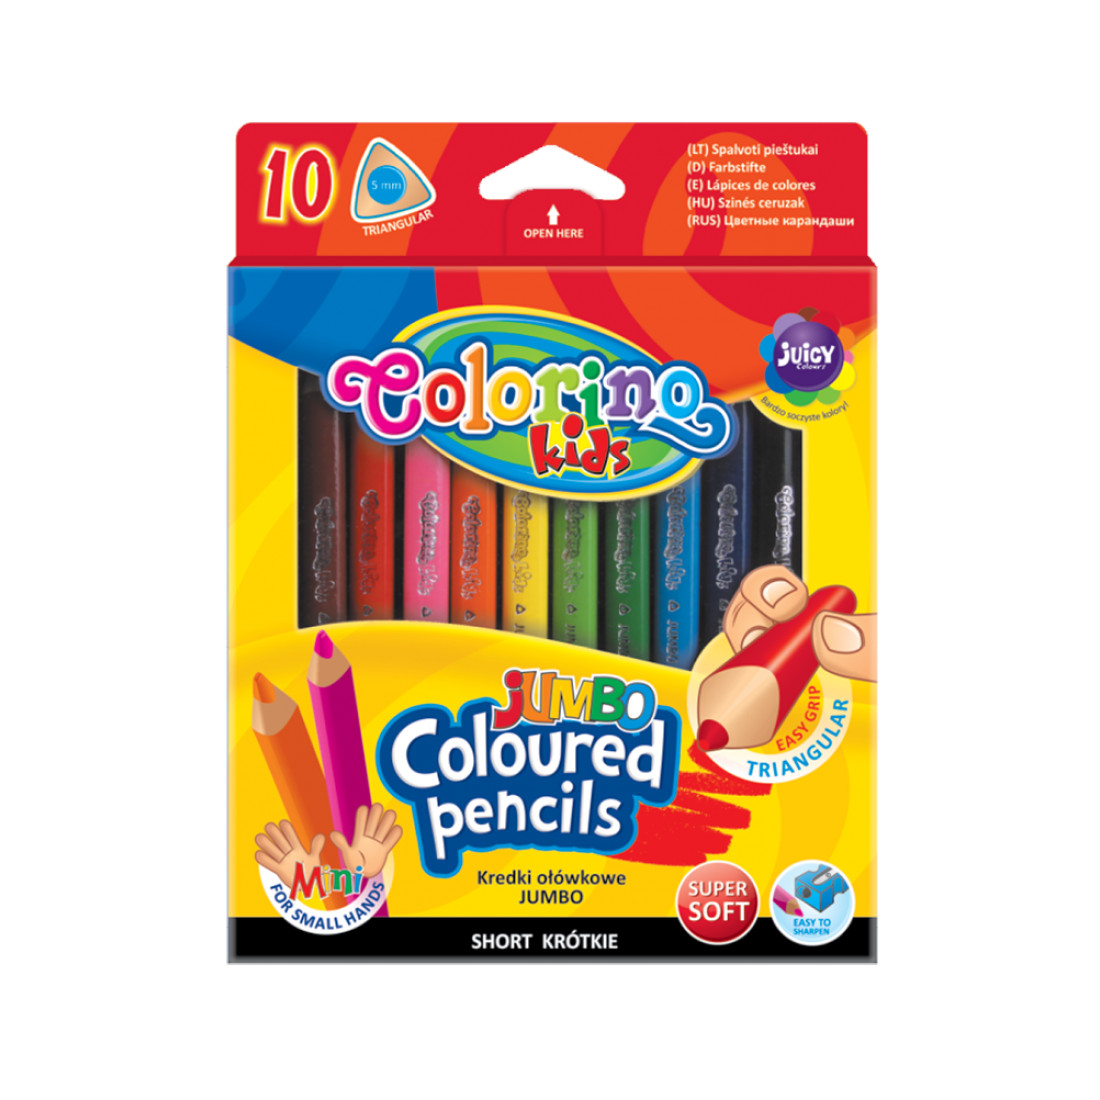 Набор карандашей цветных Colorino JUMBO mini, 10 цветов, с точилкой для самых маленьких потешки загадки небылицы стихи сказки